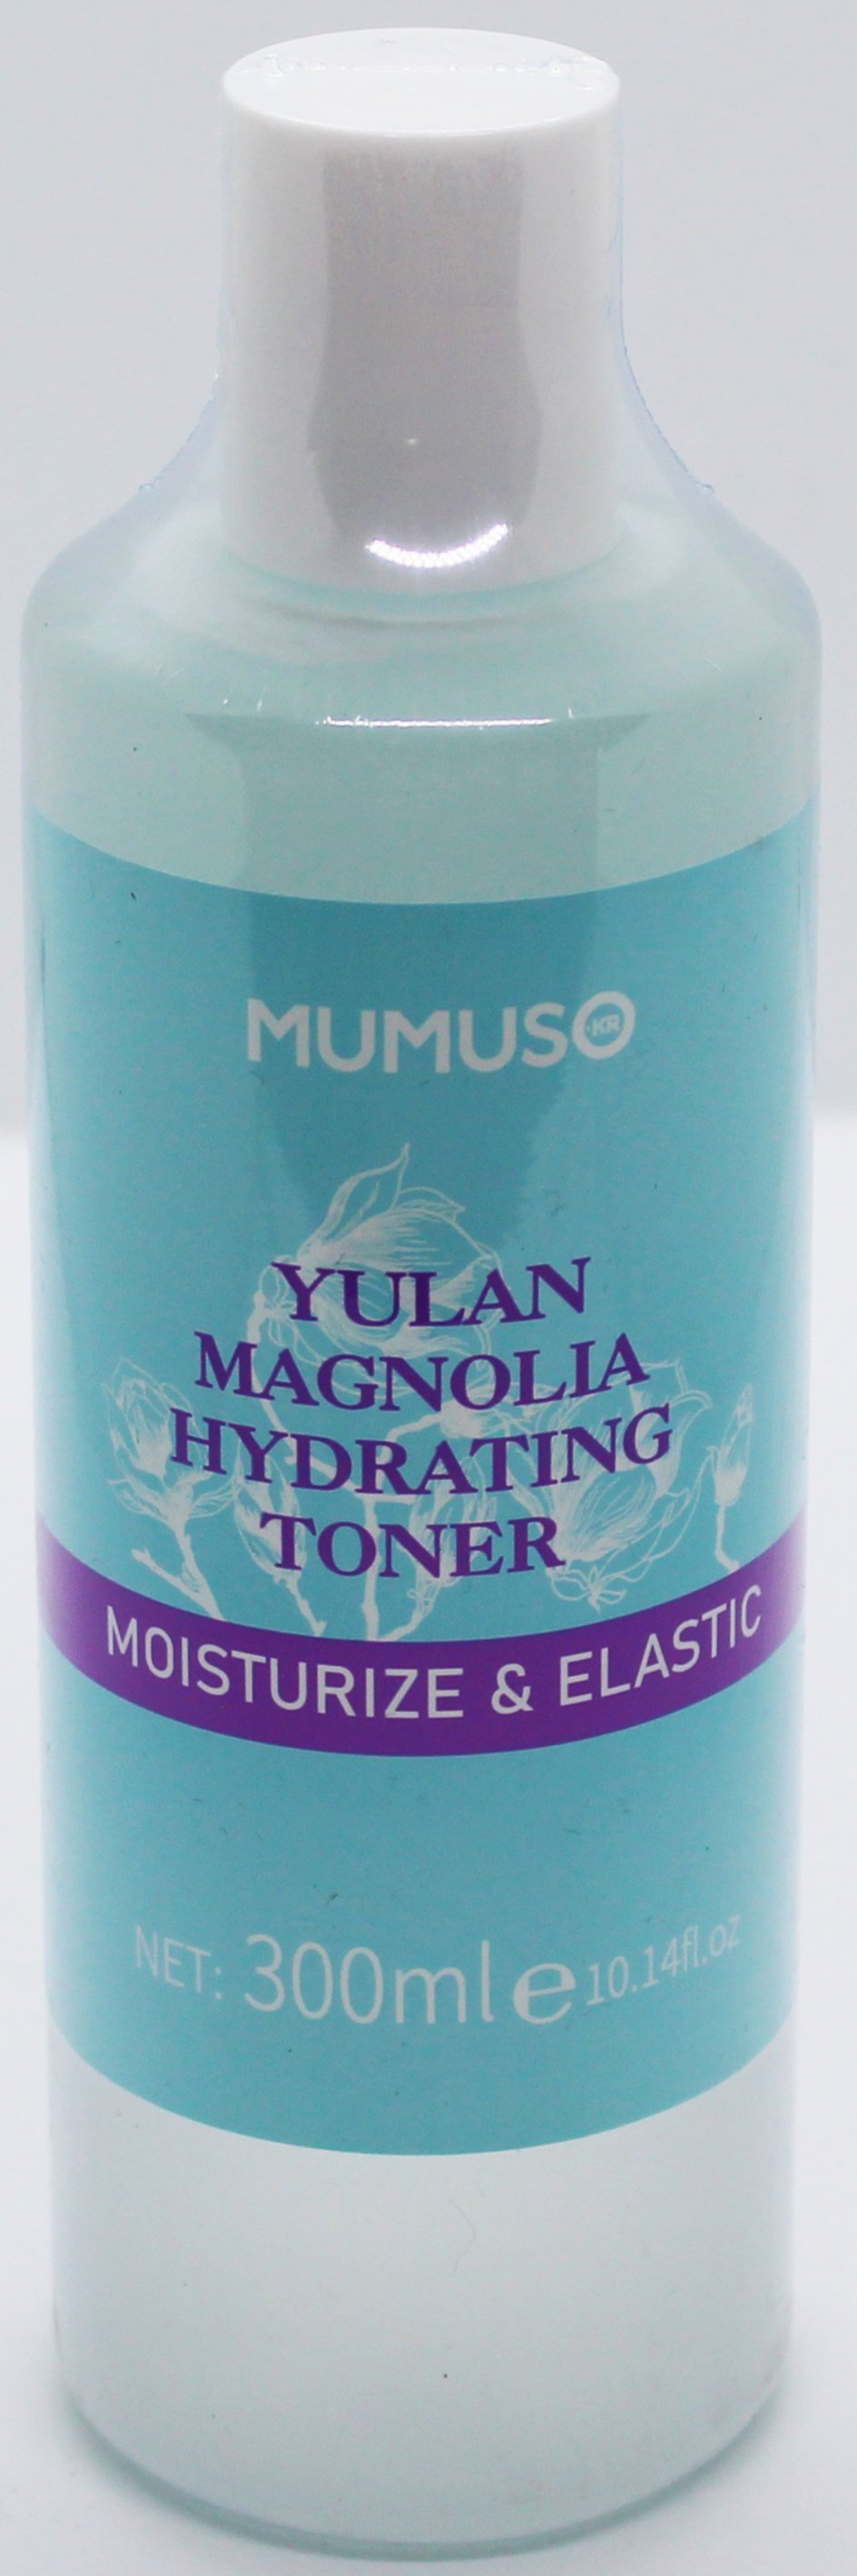 Mumuso Yulan Magnolia Hydrating Toner